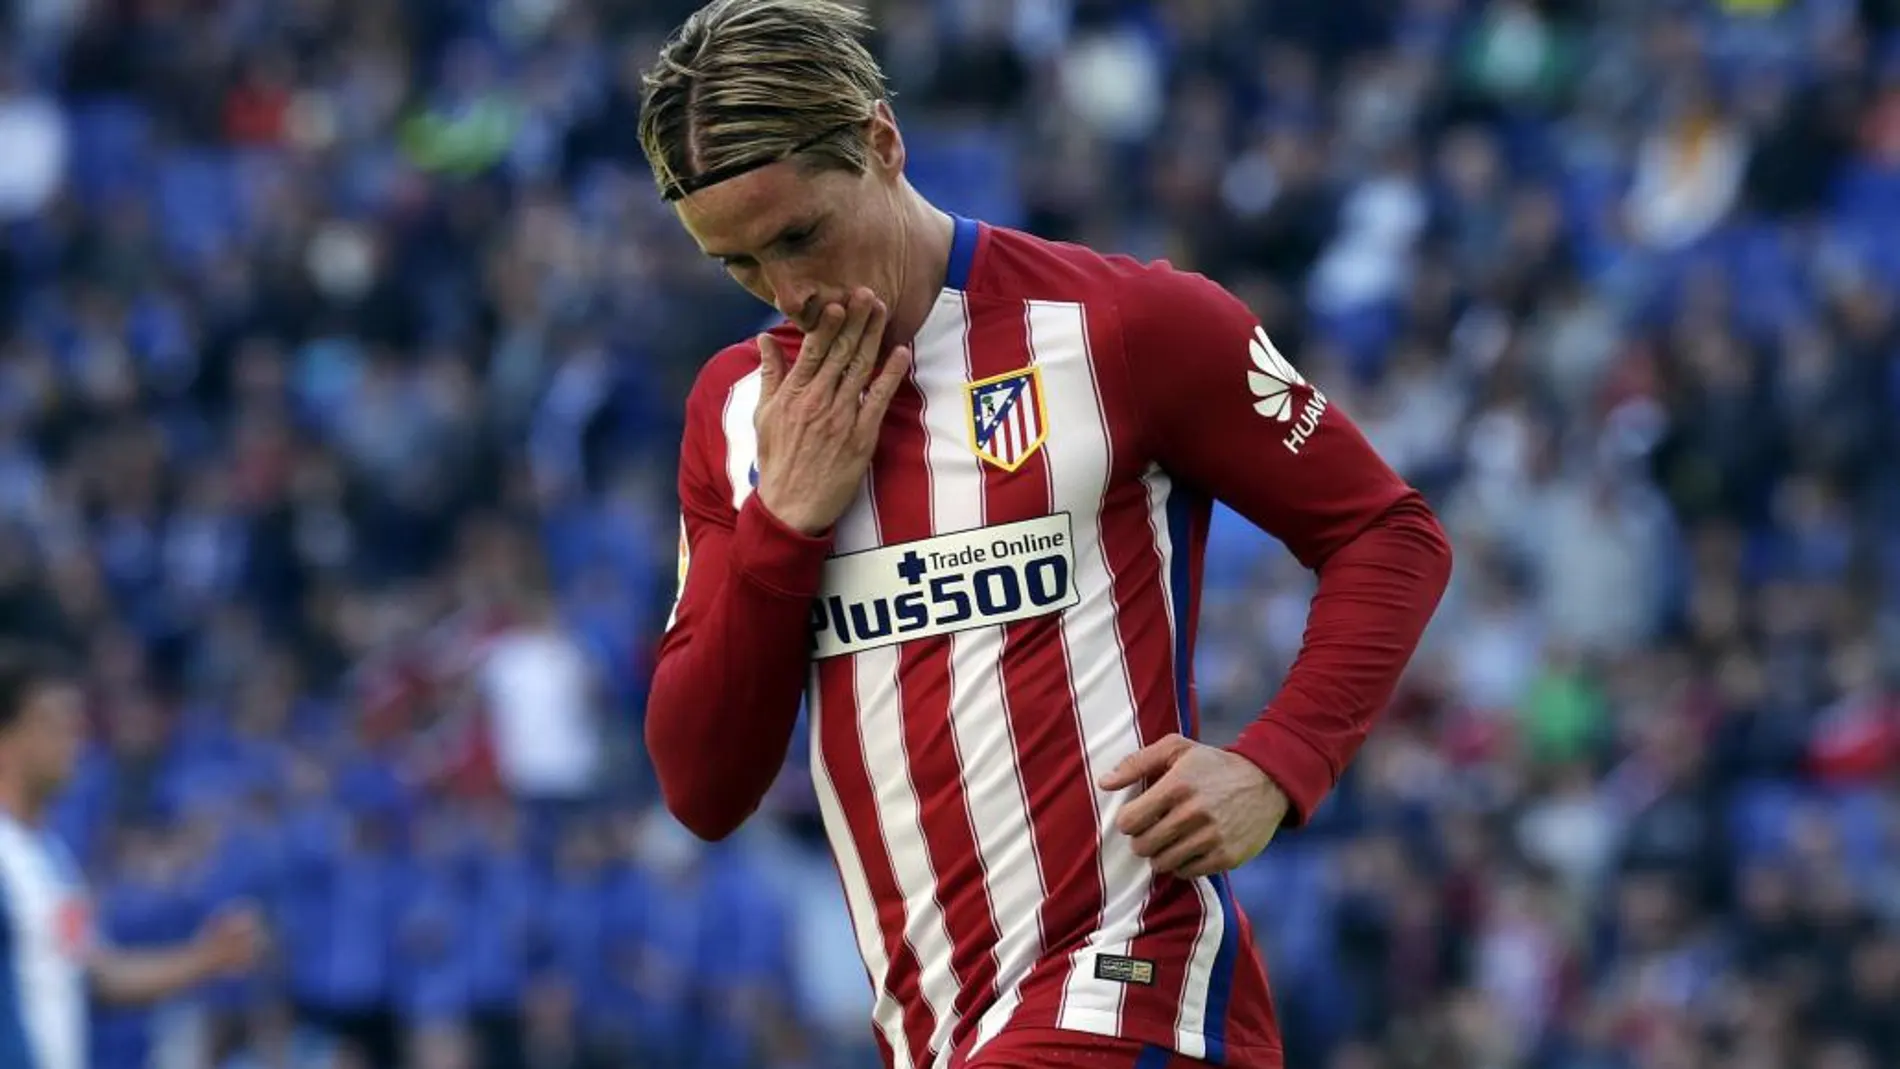 El delantero del Atlético de Madrid Fernando Torres celebra la consecución del primer gol de su equipo ante el Espanyol